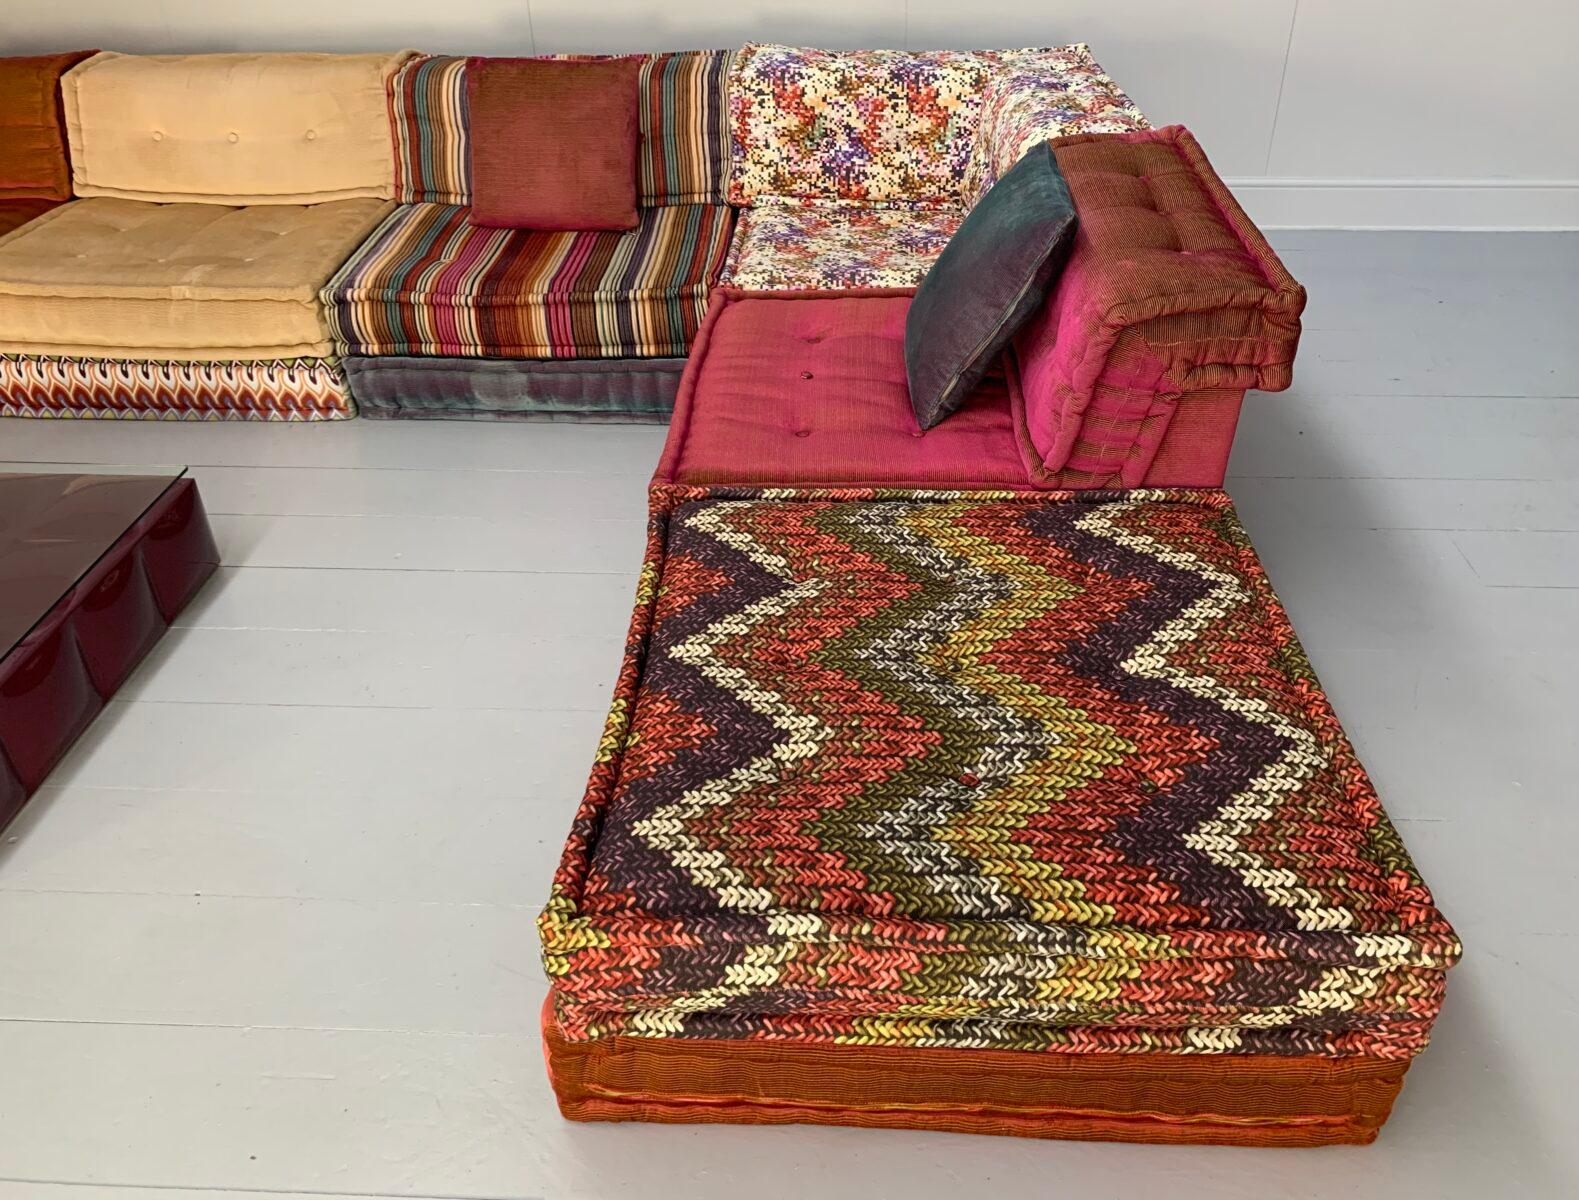 Contemporary Roche Bobois “Mah Jong” Sofa & Table – In Missoni Fabric For Sale